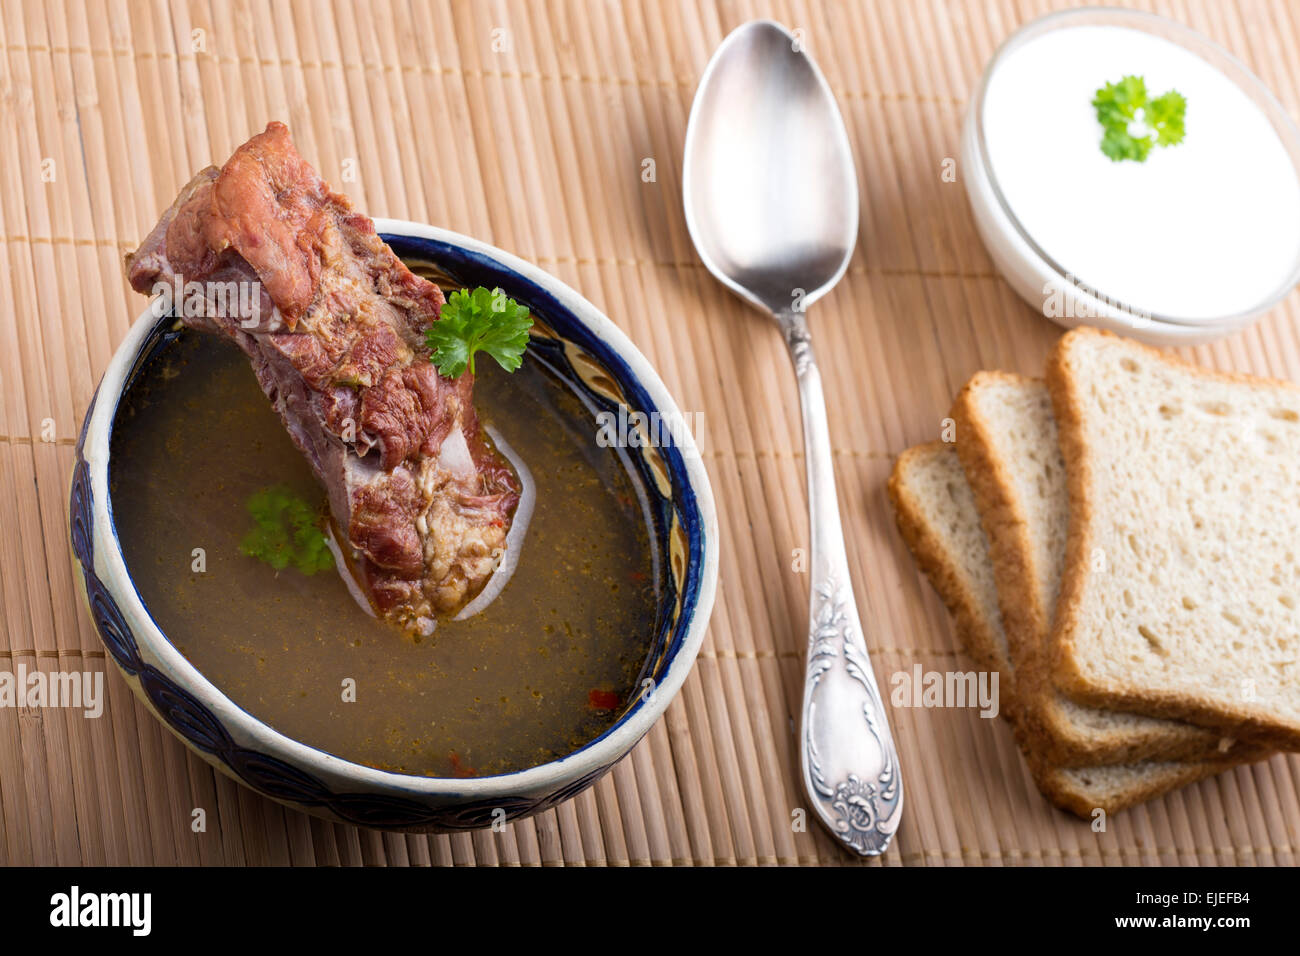 Gemüsesuppe mit geräuchertem Fleisch, Brot, Creme und silberne Löffel auf hölzernen Tischdecke Stockfoto